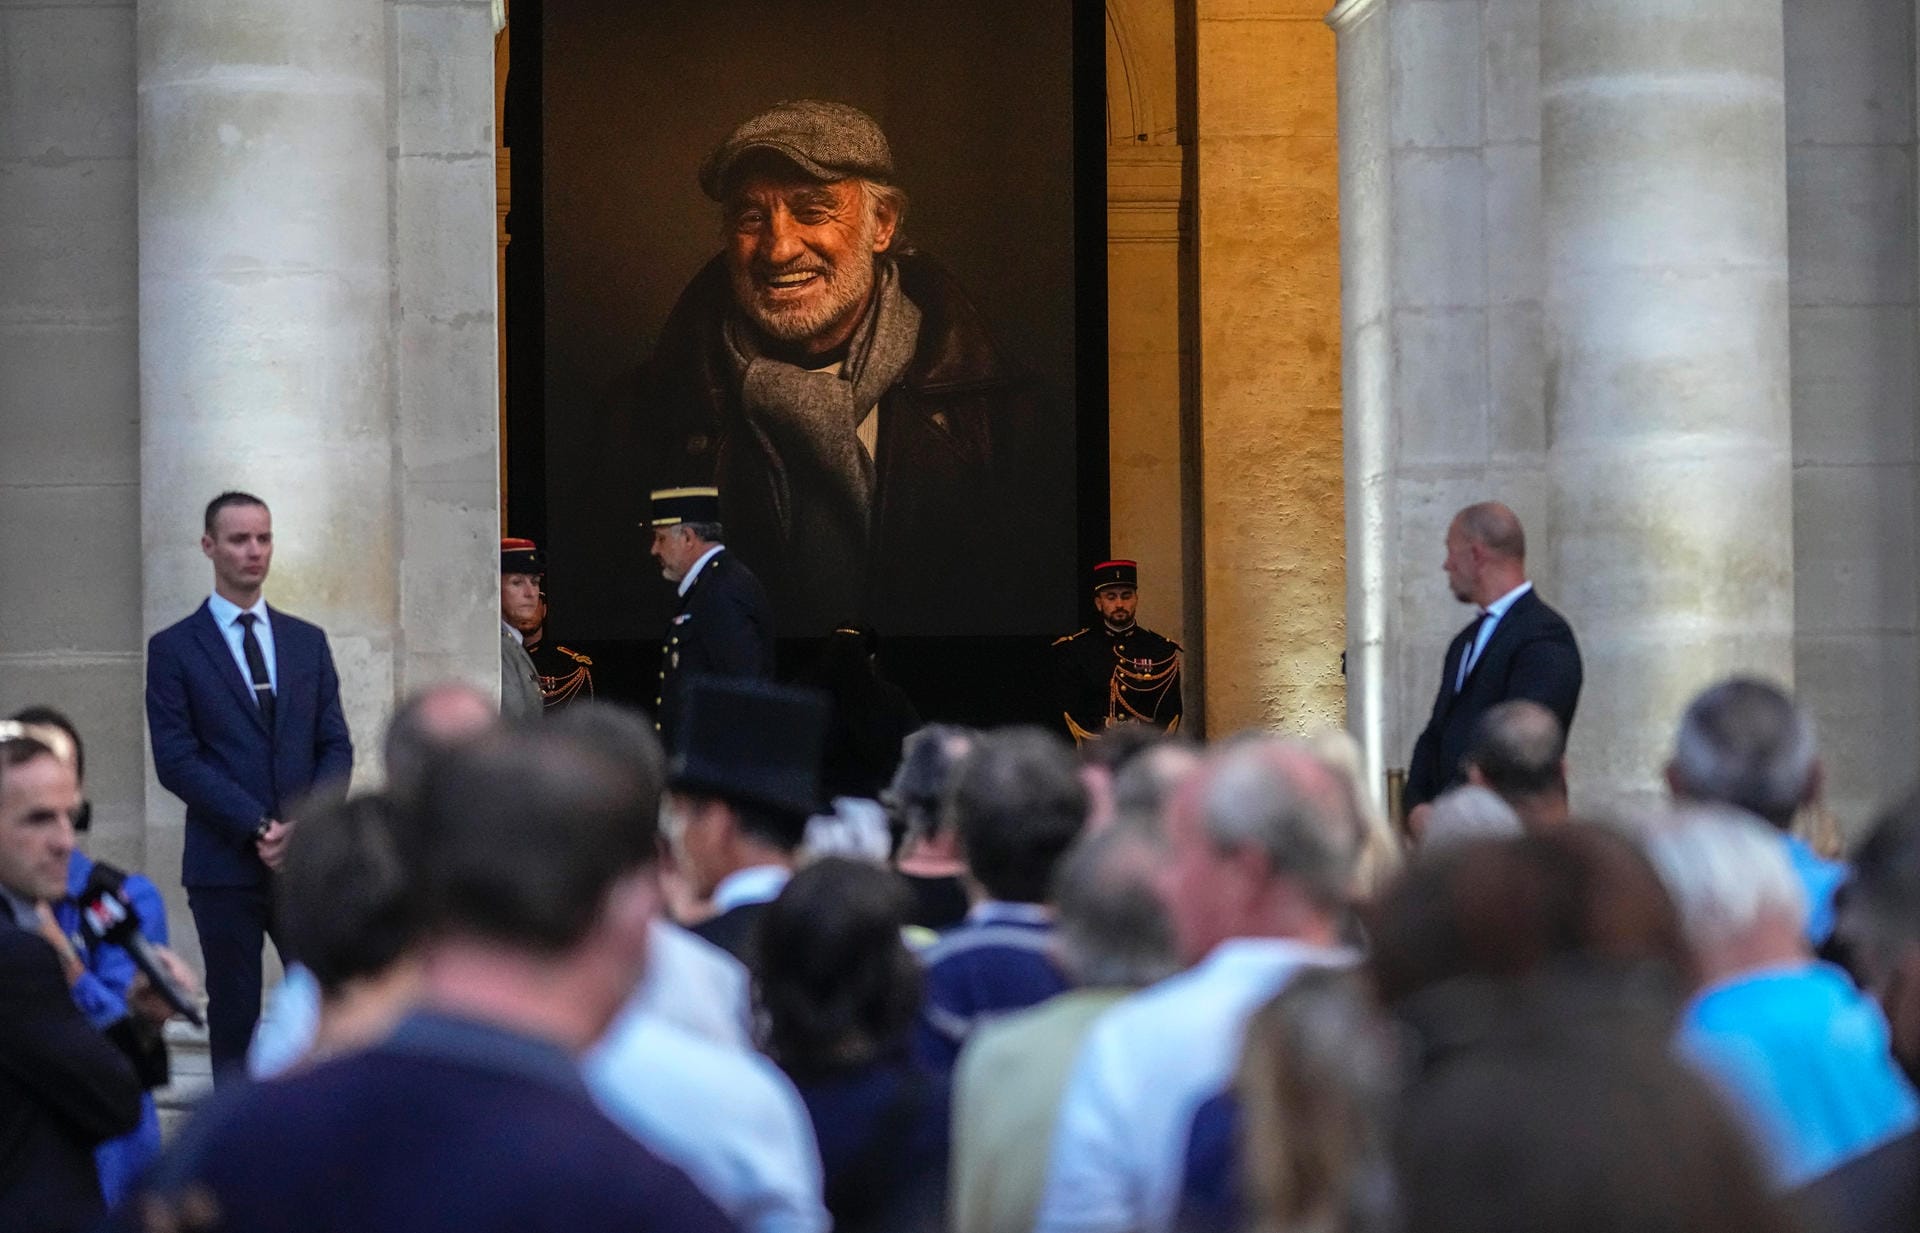 Menschen stehen an, um dem Sarg mit den sterblichen Überresten des französischen Schauspielers Jean-Paul Belmondo im Invalidendom zu sehen.